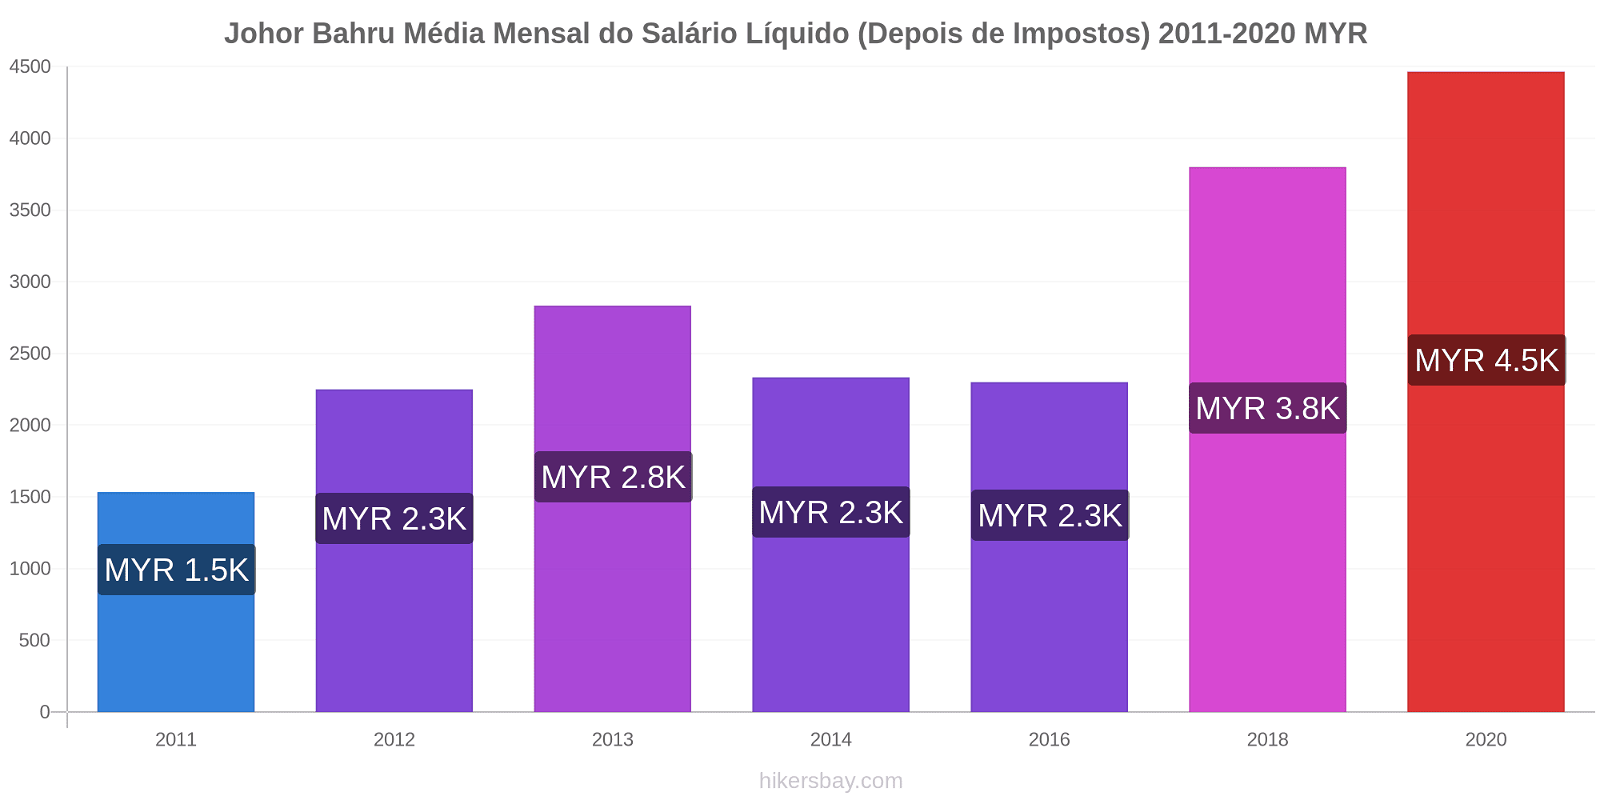 Johor Bahru variação de preço Salário líquido mensal médio (depois de impostos) hikersbay.com